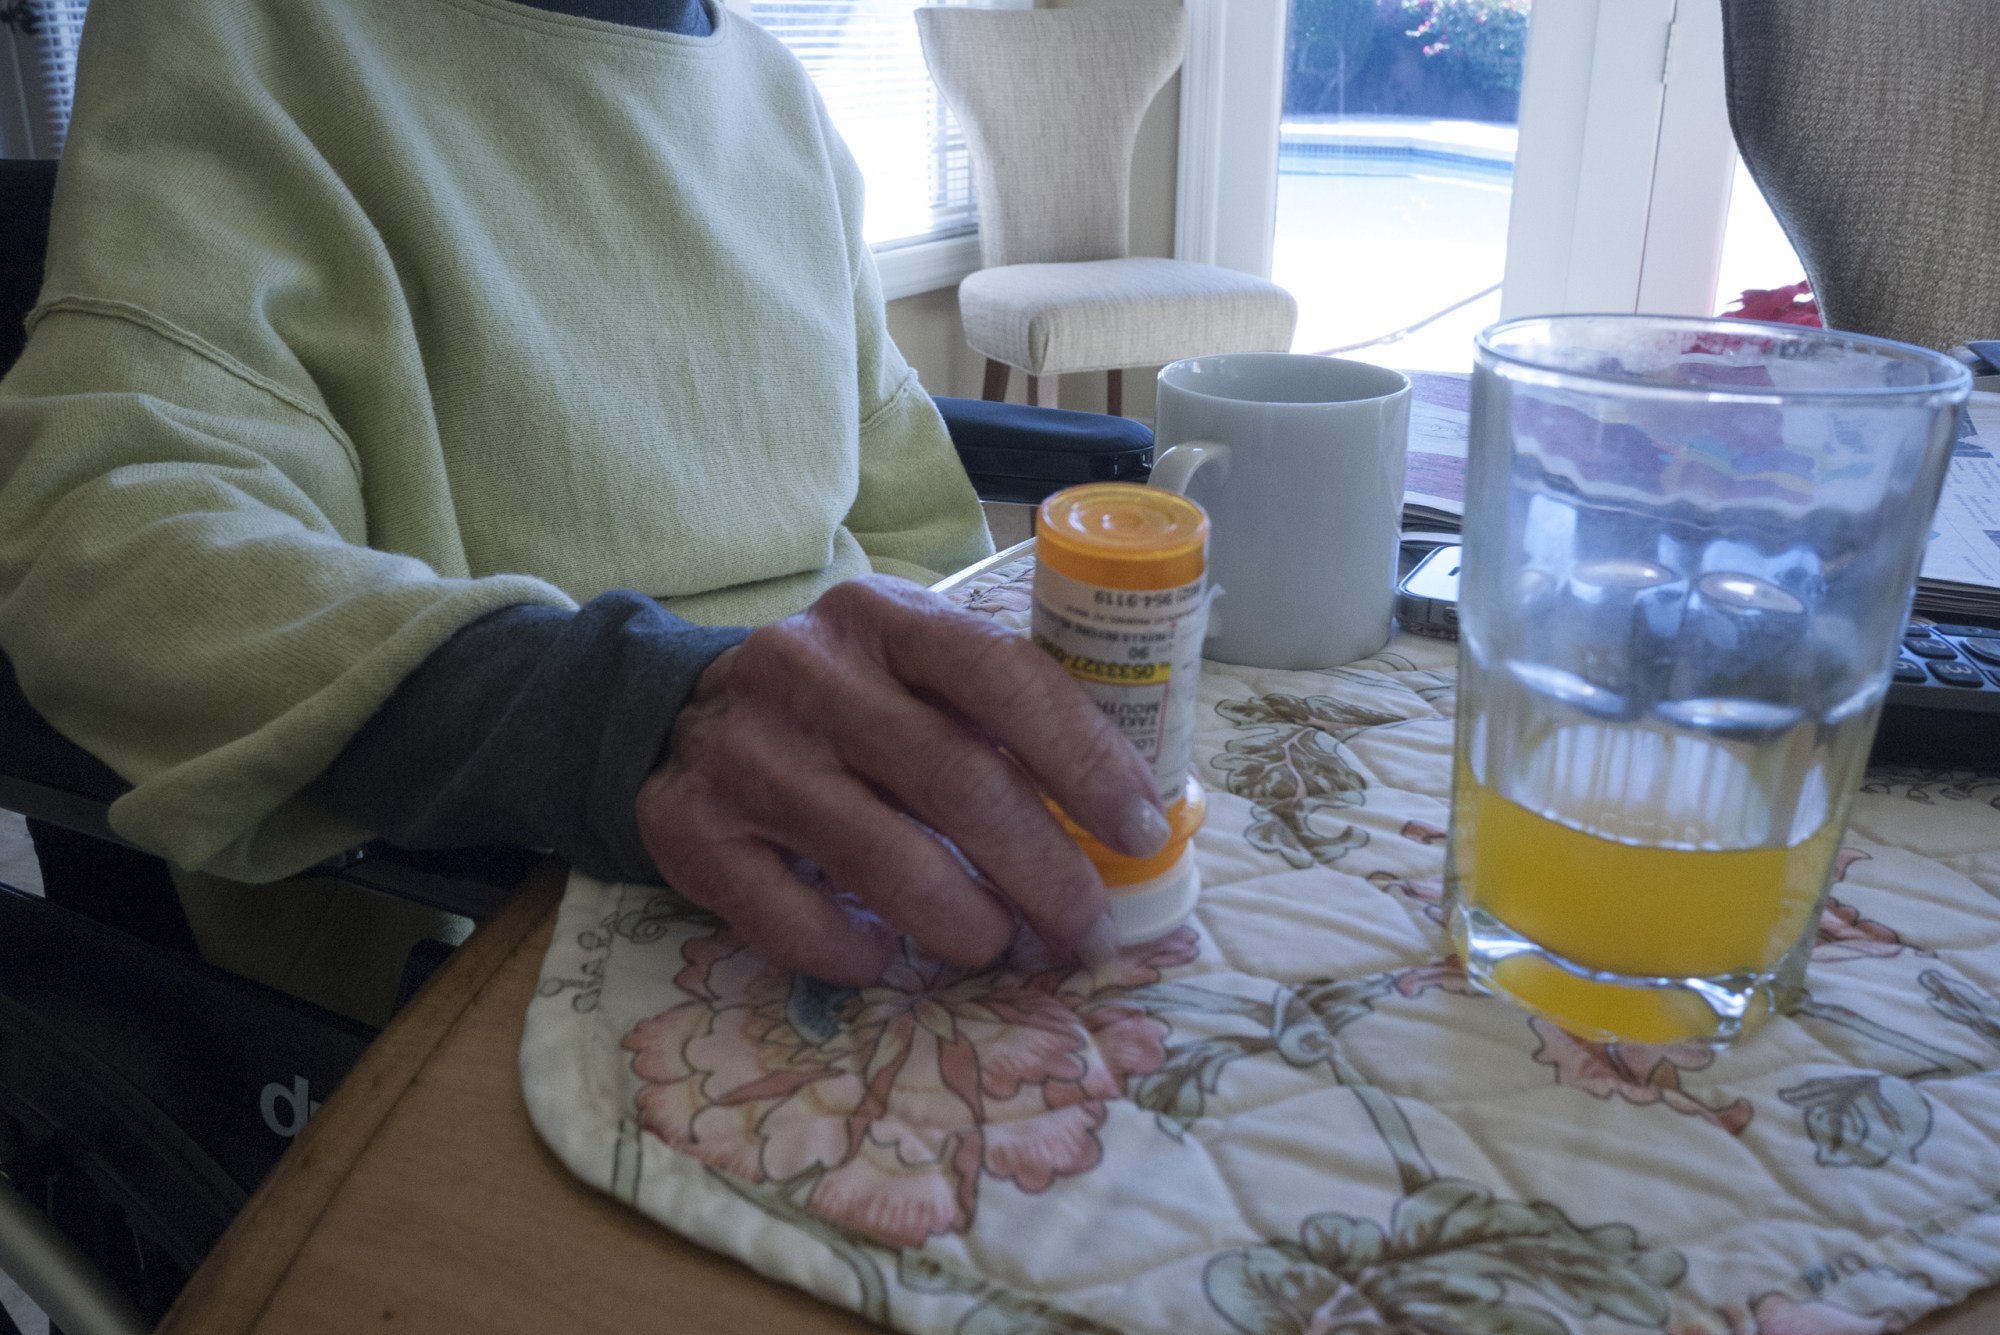 PHOENIX, AZ - DECEMBER 24: An elderly women begins her day taking her daily prescription medicine on December 24, 2017 in Phoenix, Arizona.(Photo by Andrew Lichtenstein/ Corbis via Getty Images)